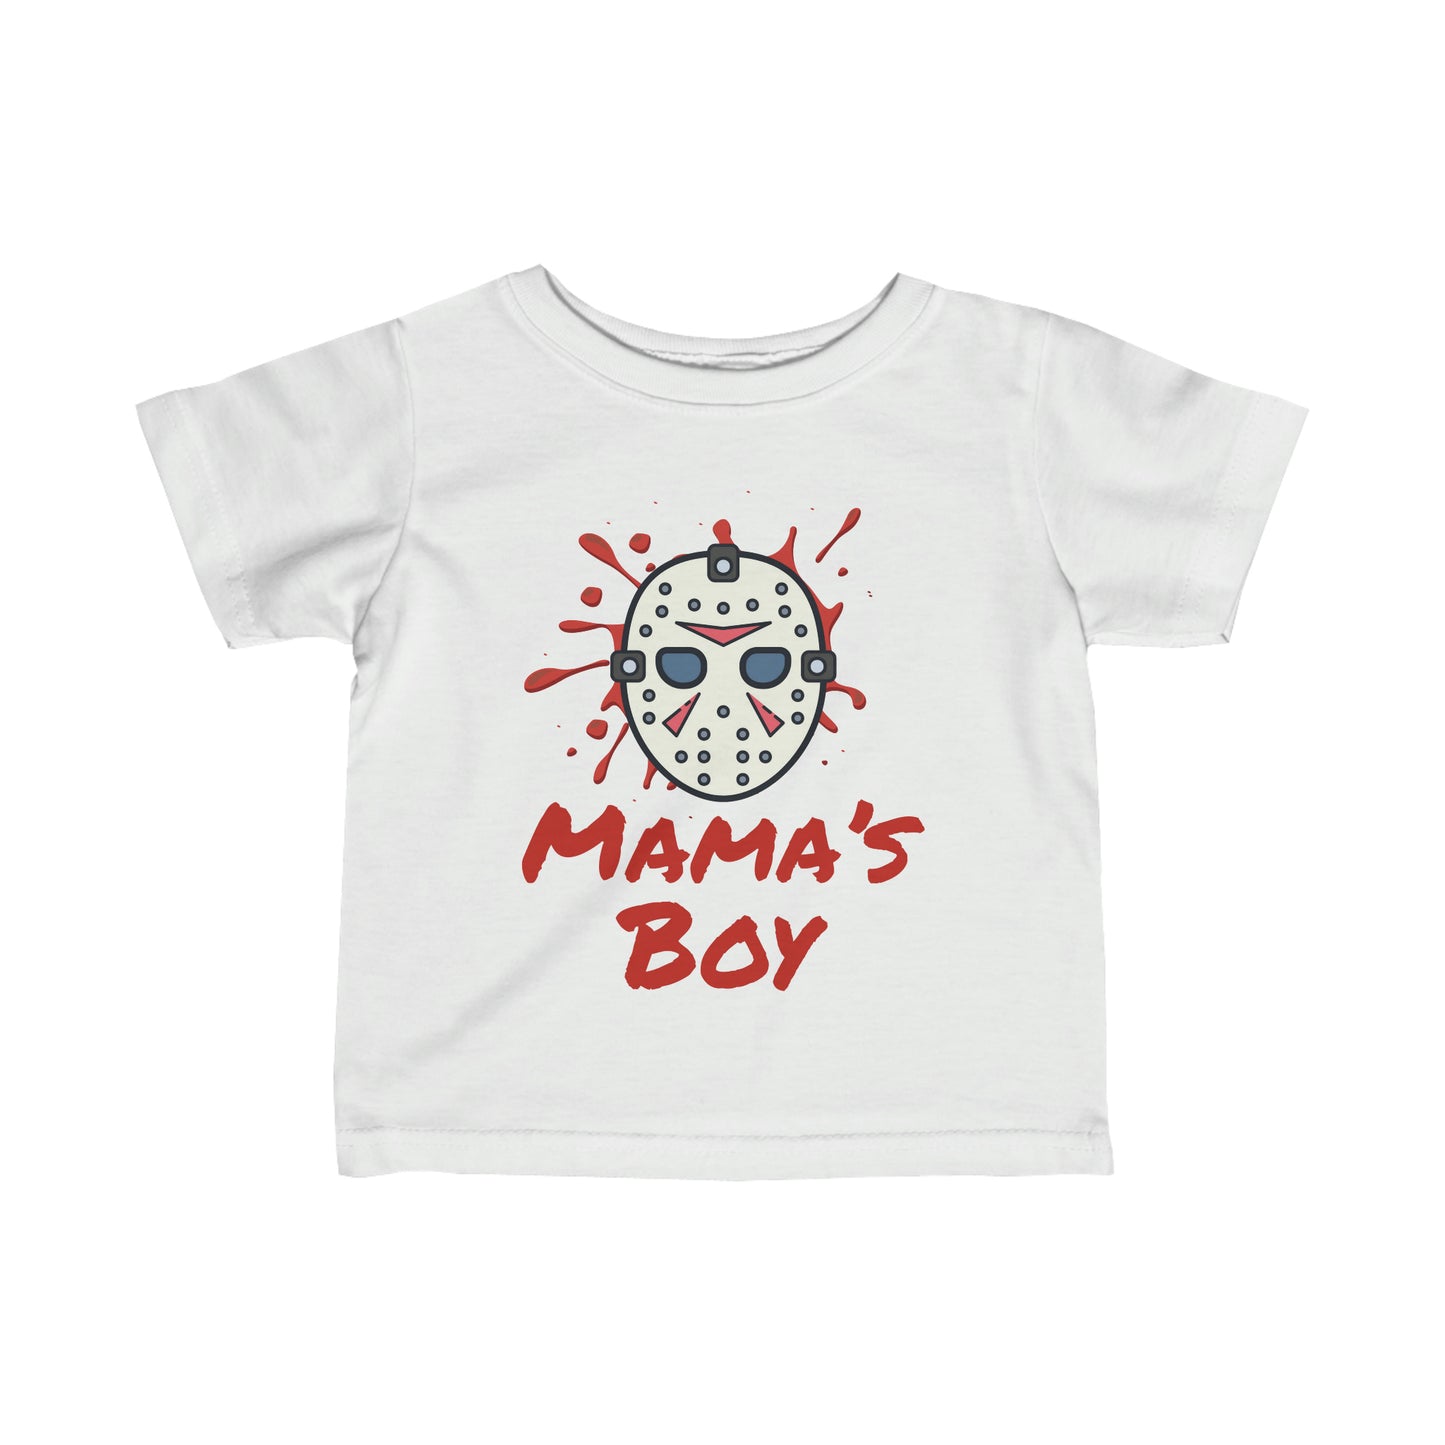 MAMA’S BOY BABY TEE SHIRT IN BLACK - BAT BABIES